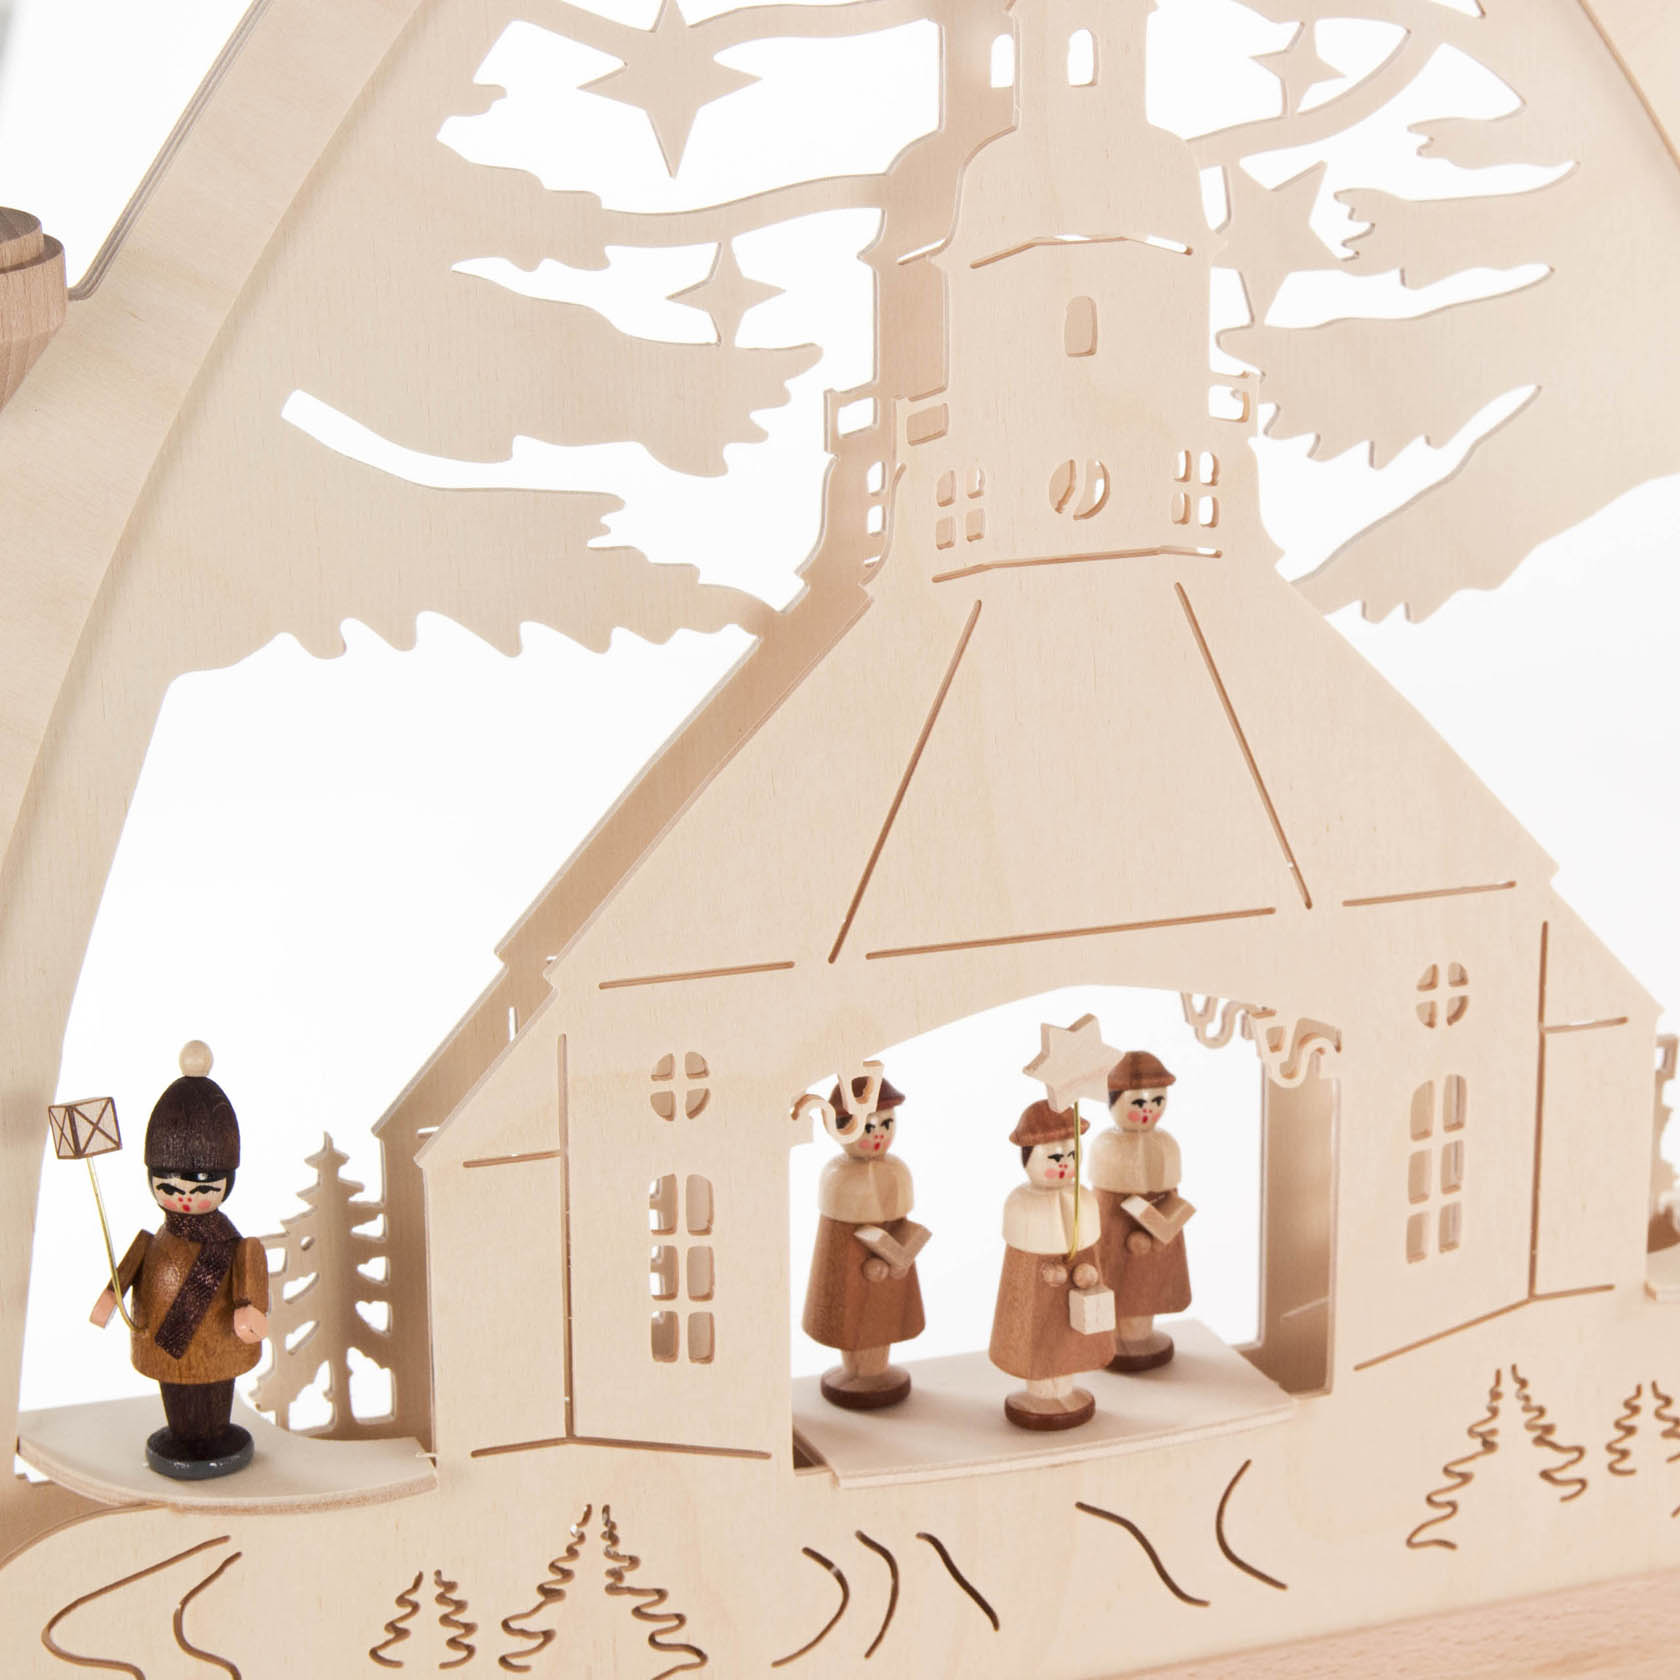 Gotischer Bogen mit Seiffener Kirche, Kurrende und Laternenkindern, elektrisch beleuchtet